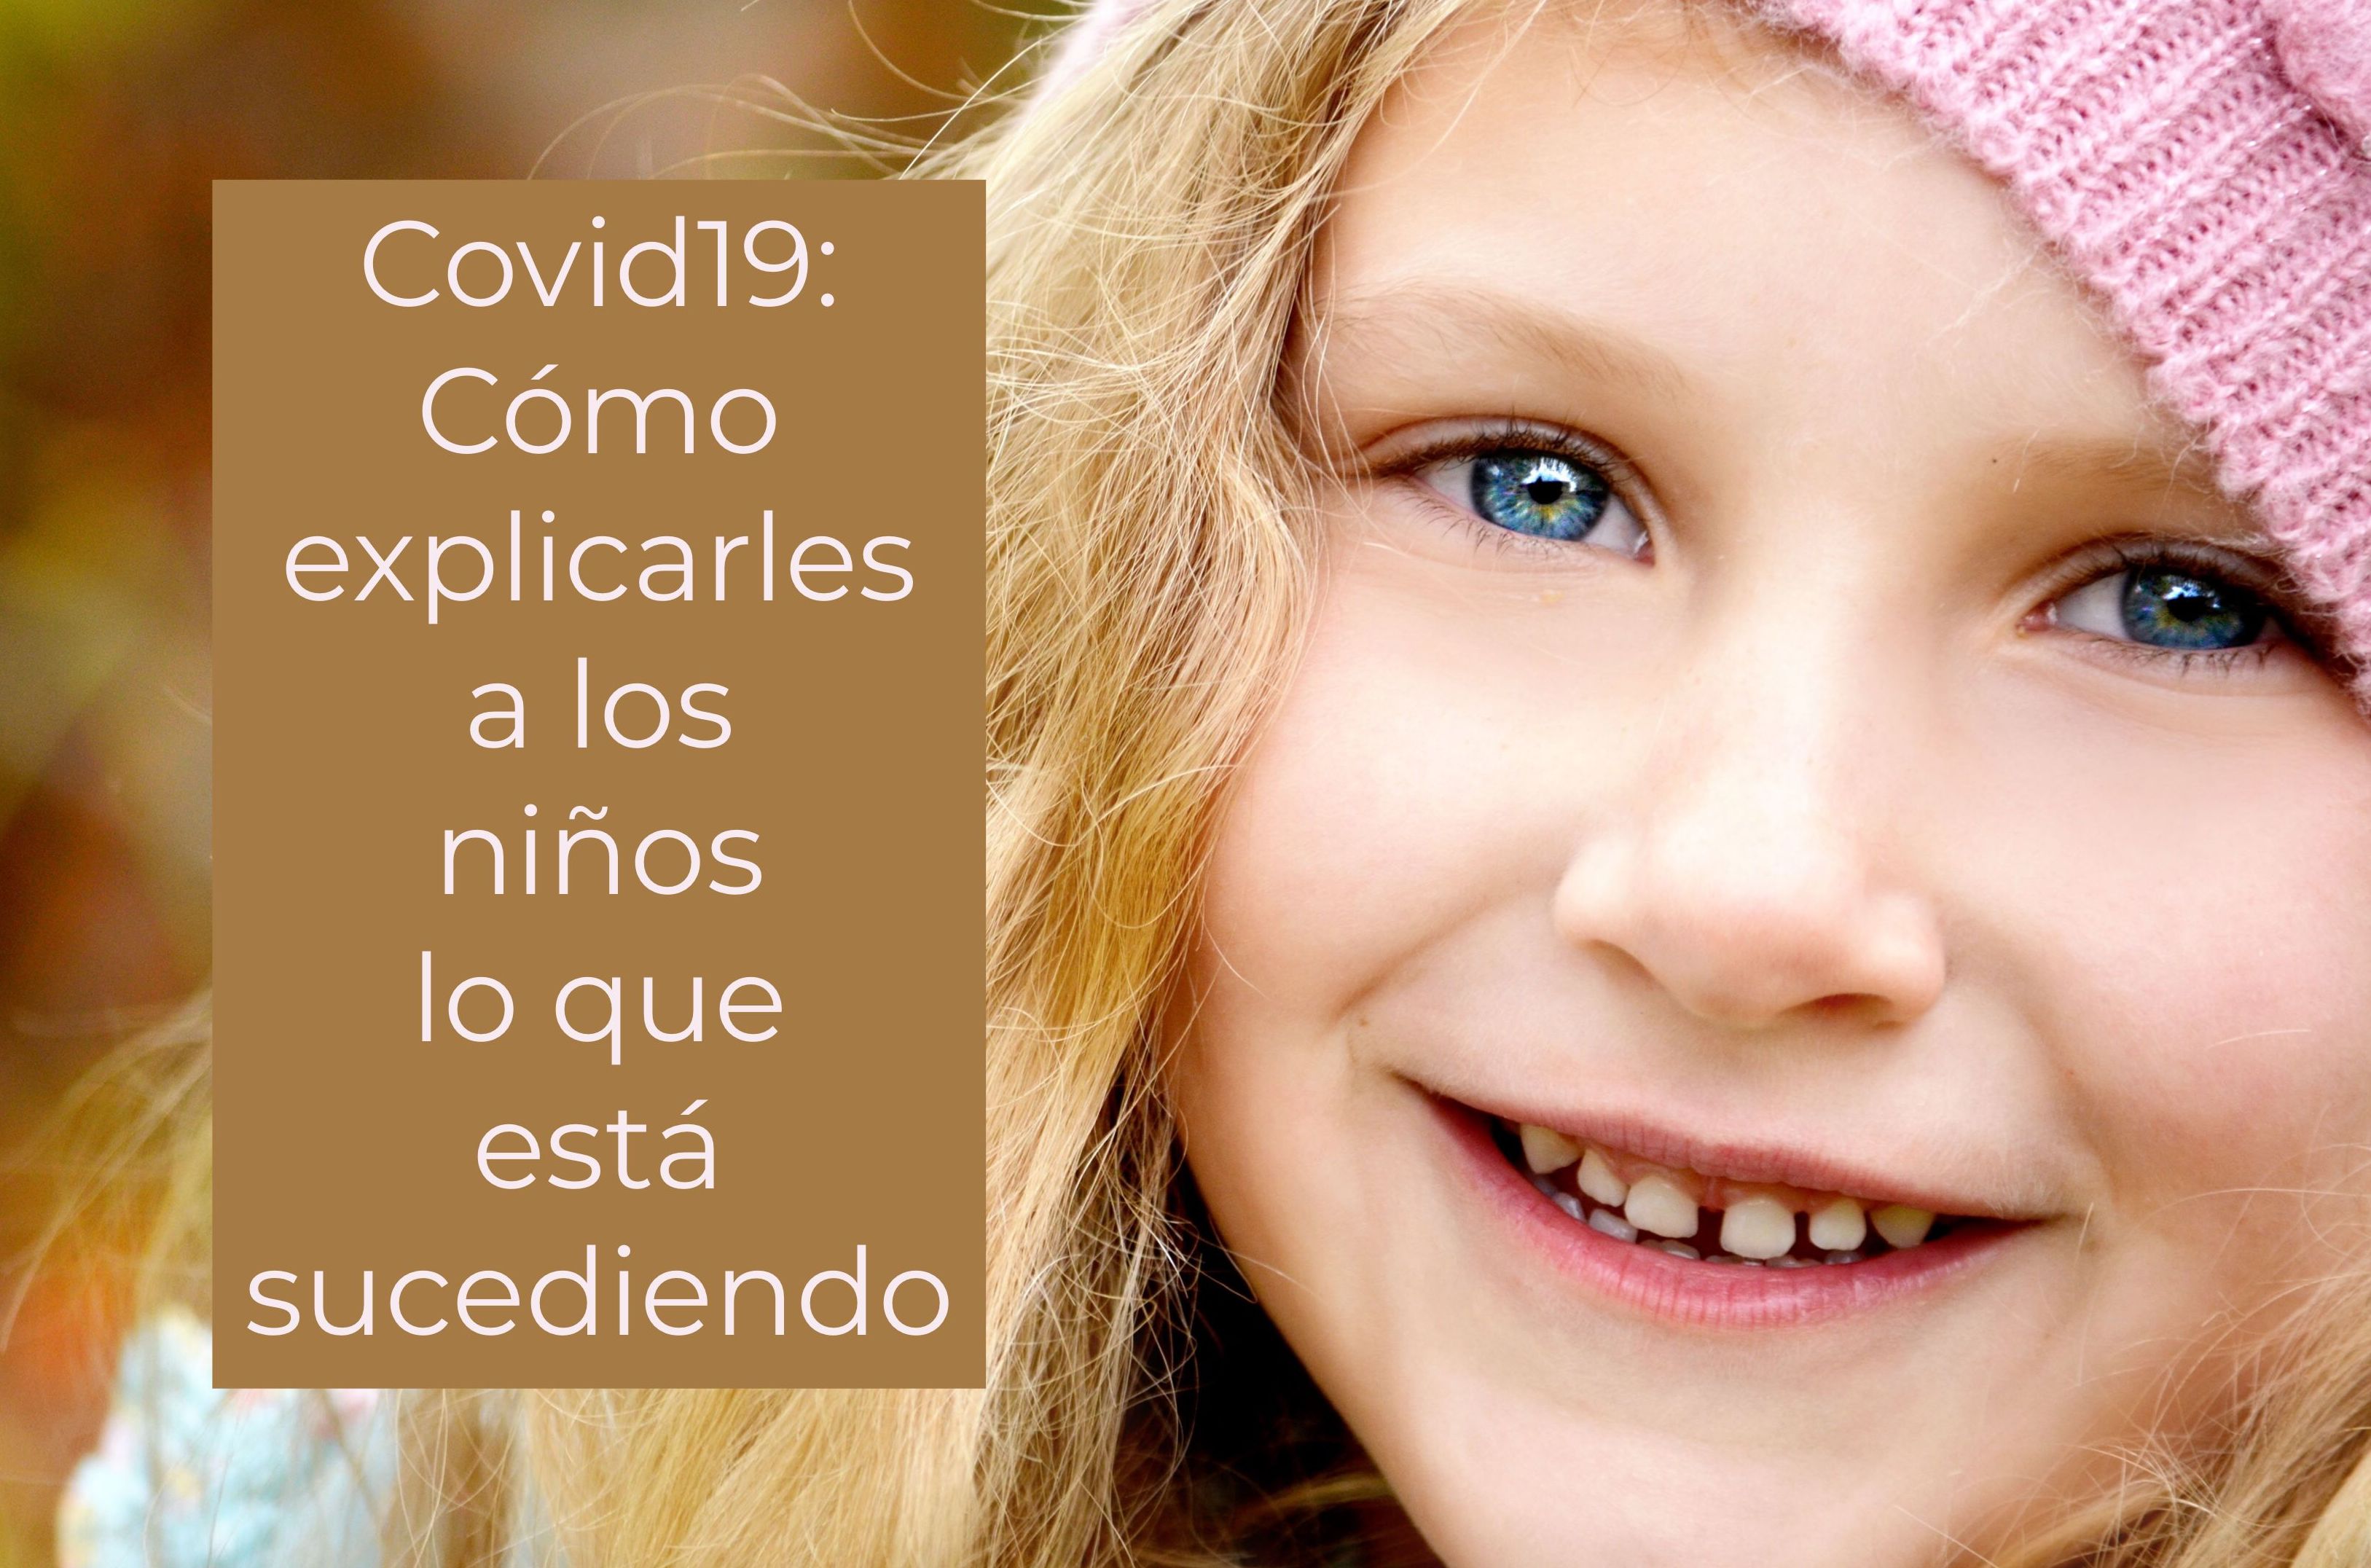 Covid19: Cómo explicarles bien a los niños lo que está sucediendo